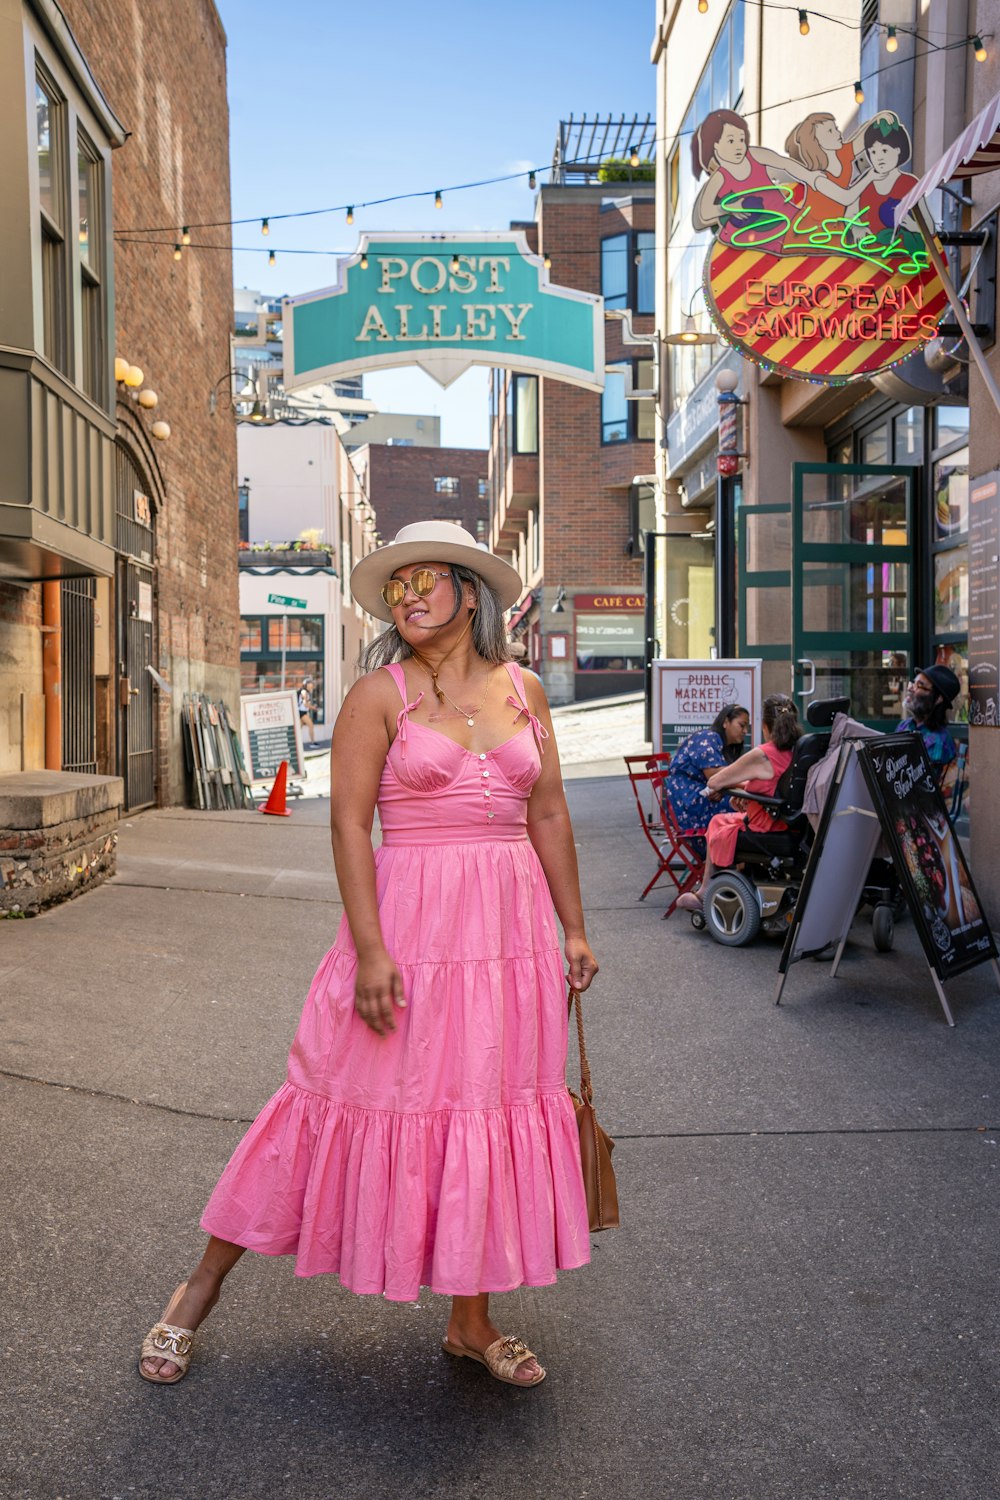 Une femme en robe rose et chapeau marchant dans une rue